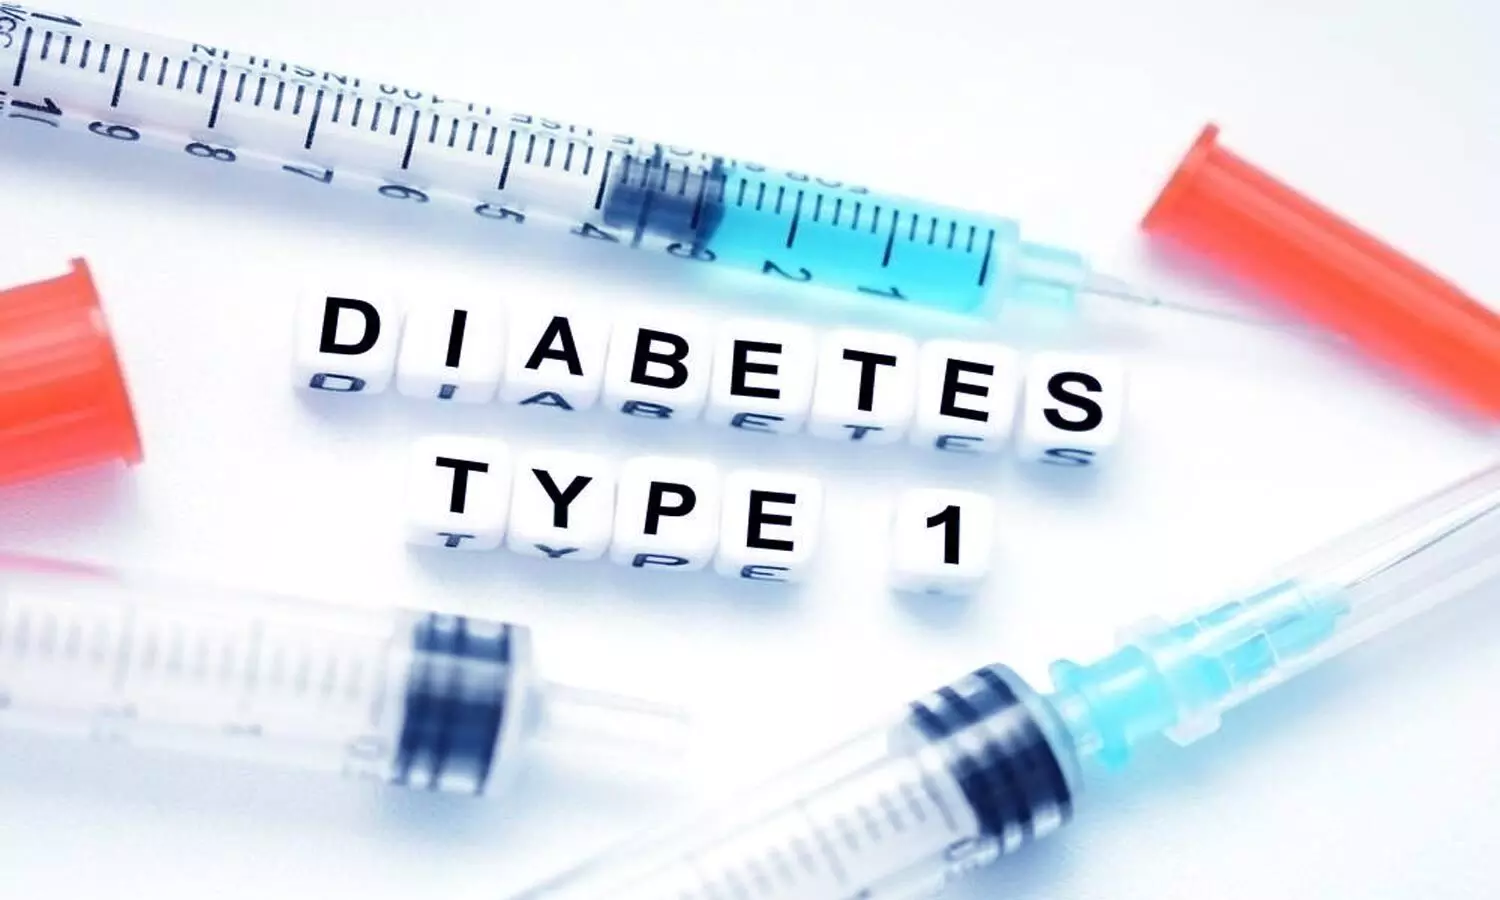 Verapamil delays progression of type 1 diabetes